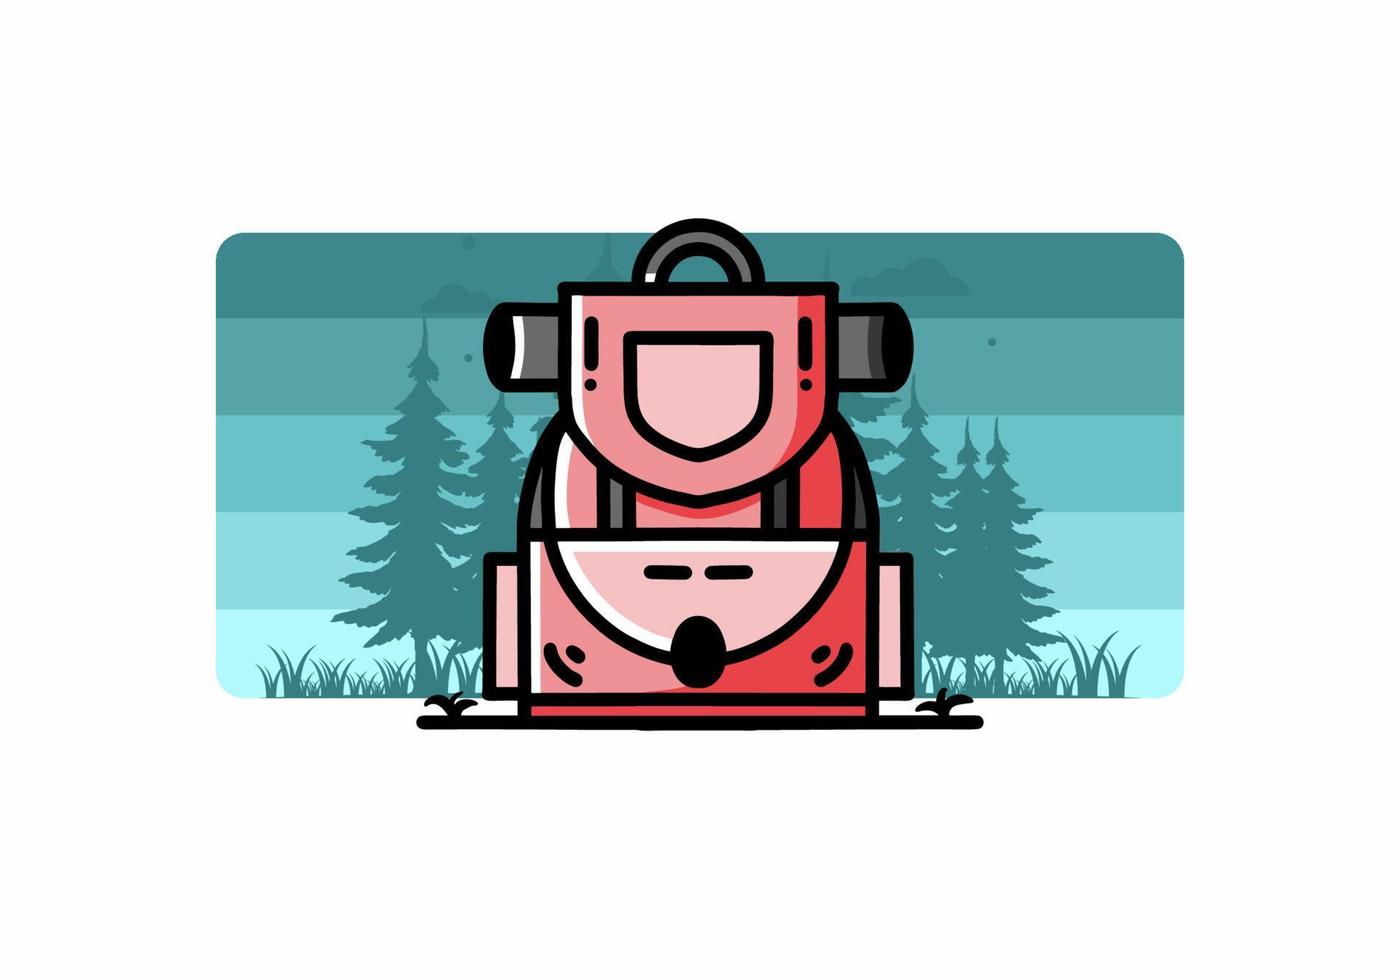 design semplice dell'illustrazione della borsa da campeggio vettore